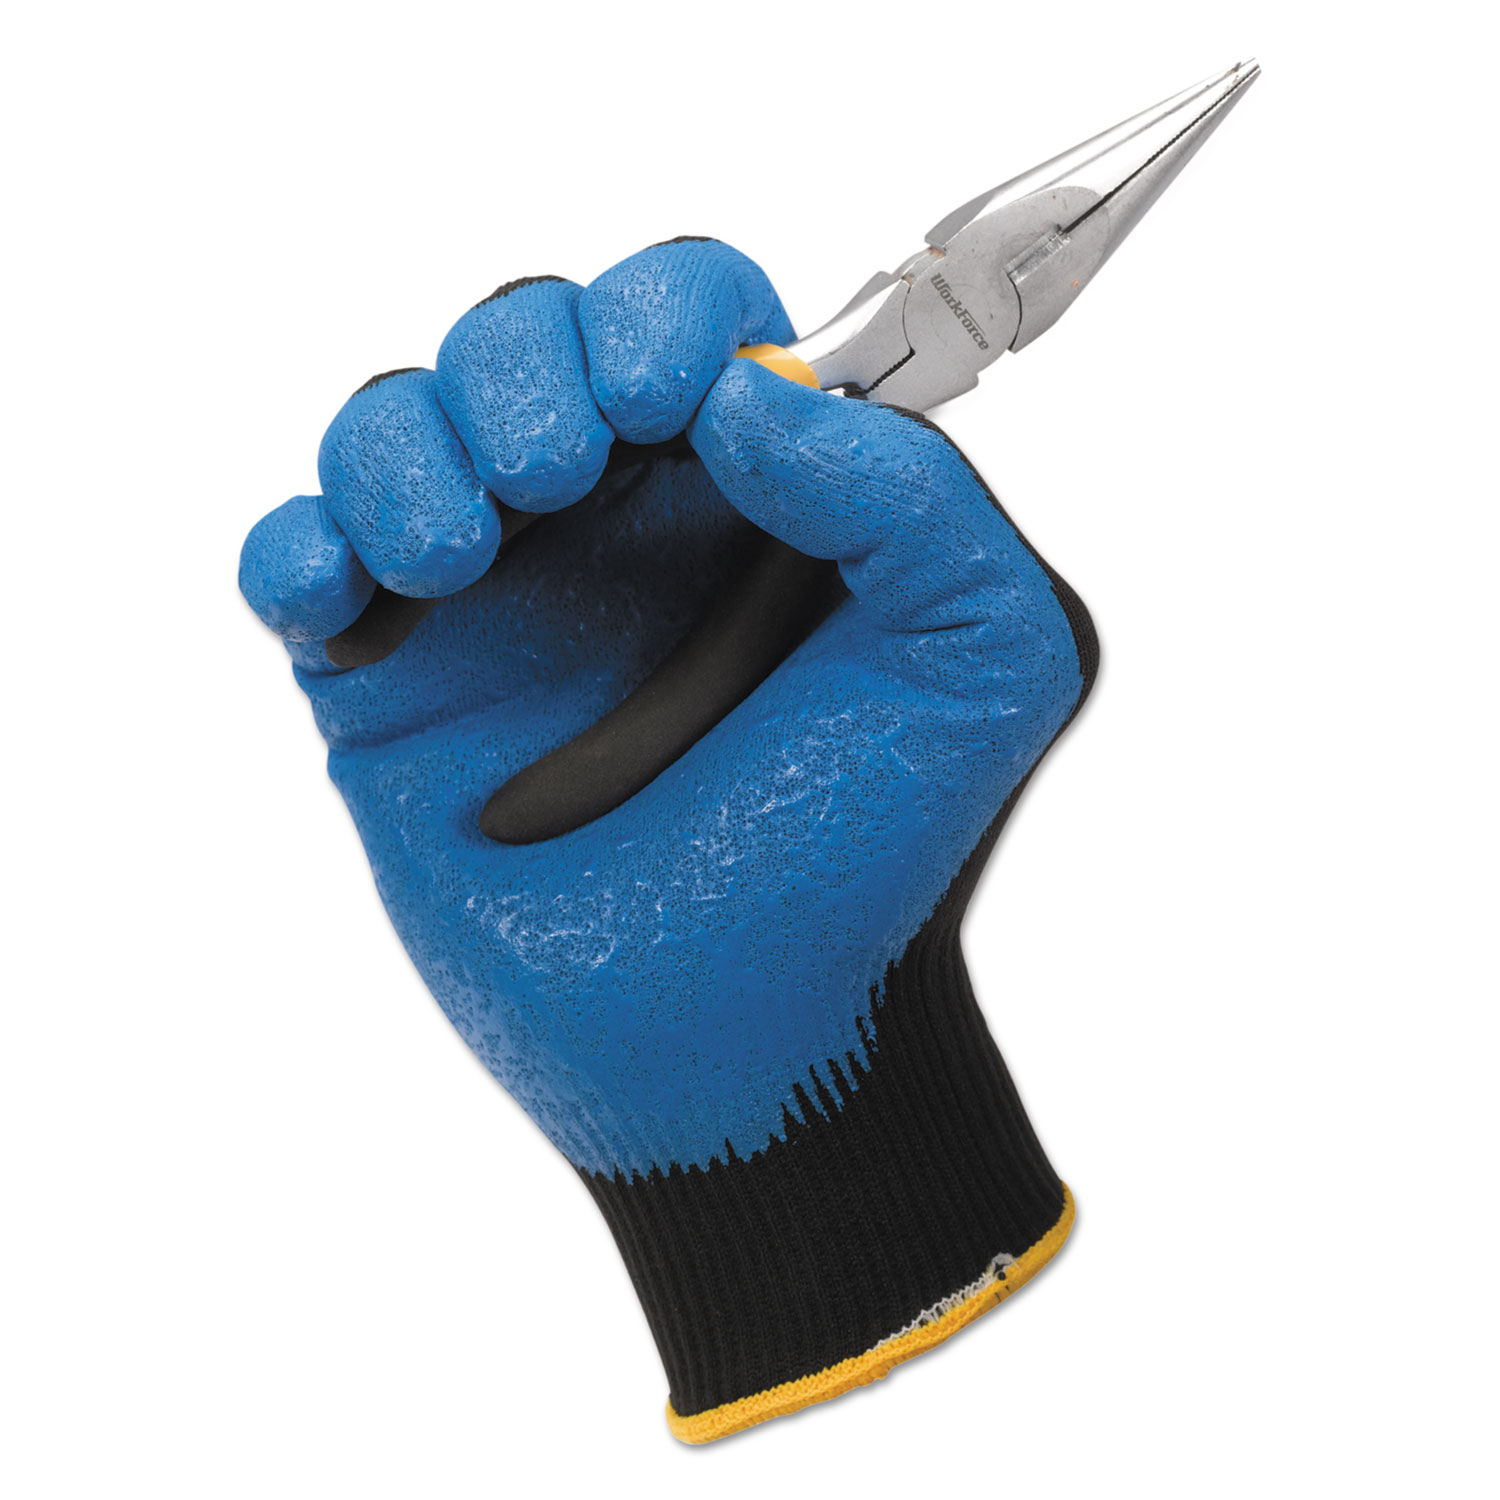 KleenGuard G40 Nitrile Coated Gloves, 230 mm Length, Medium/Size 8, Blue, 12 Pairs -KCC40226 - image 3 of 6